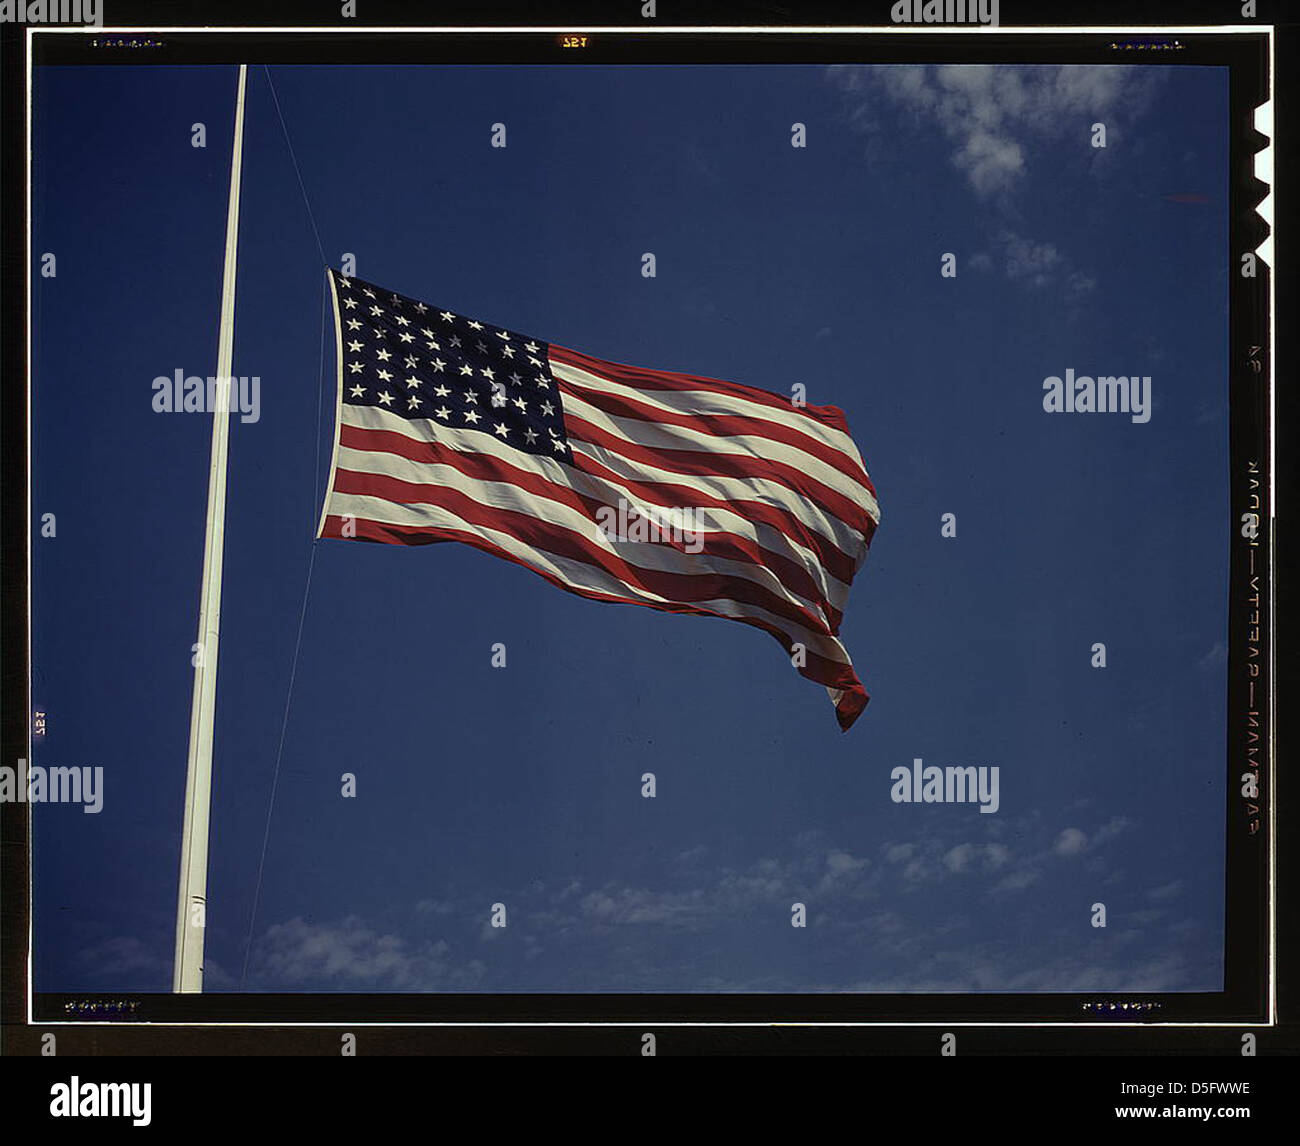 In alto, oltre a una vera "casa dei coraggiosi", le pieghe galleggianti dello Star Spangled Banner simboleggiano lo stile di vita americano ai soldati in allenamento per le battaglie che porteranno la libertà a un mondo infelice e belligerato, Fort Knox, Ky. (LOC) Foto Stock